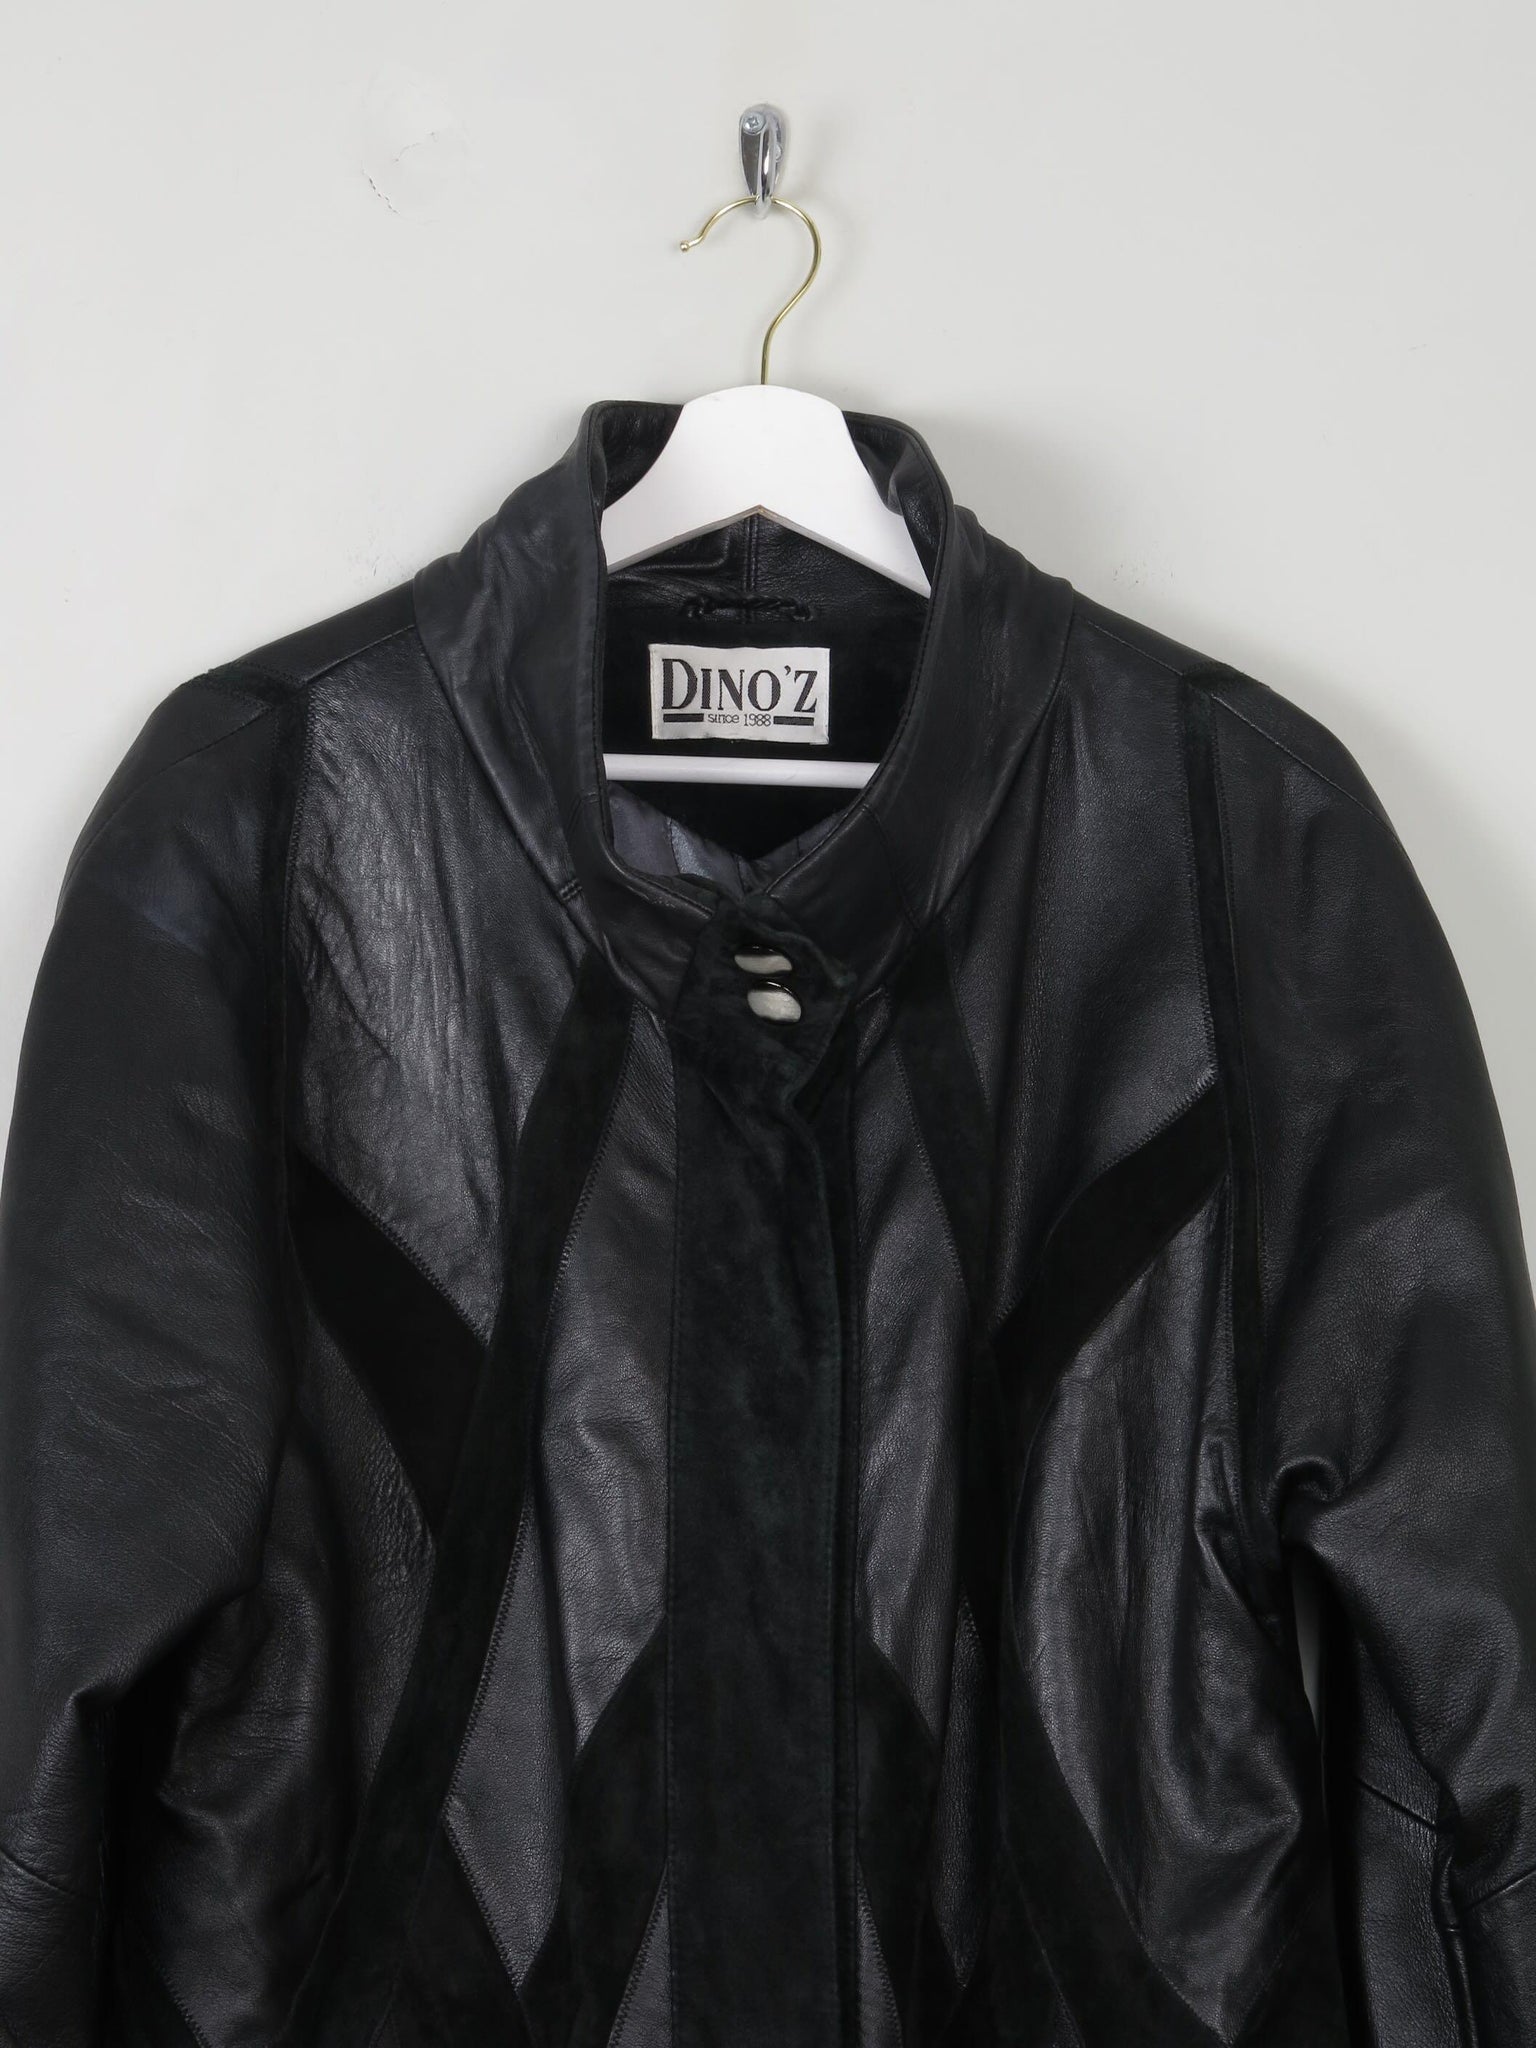 Women's Vintage Black Leather Short Coat M/L - The Harlequin